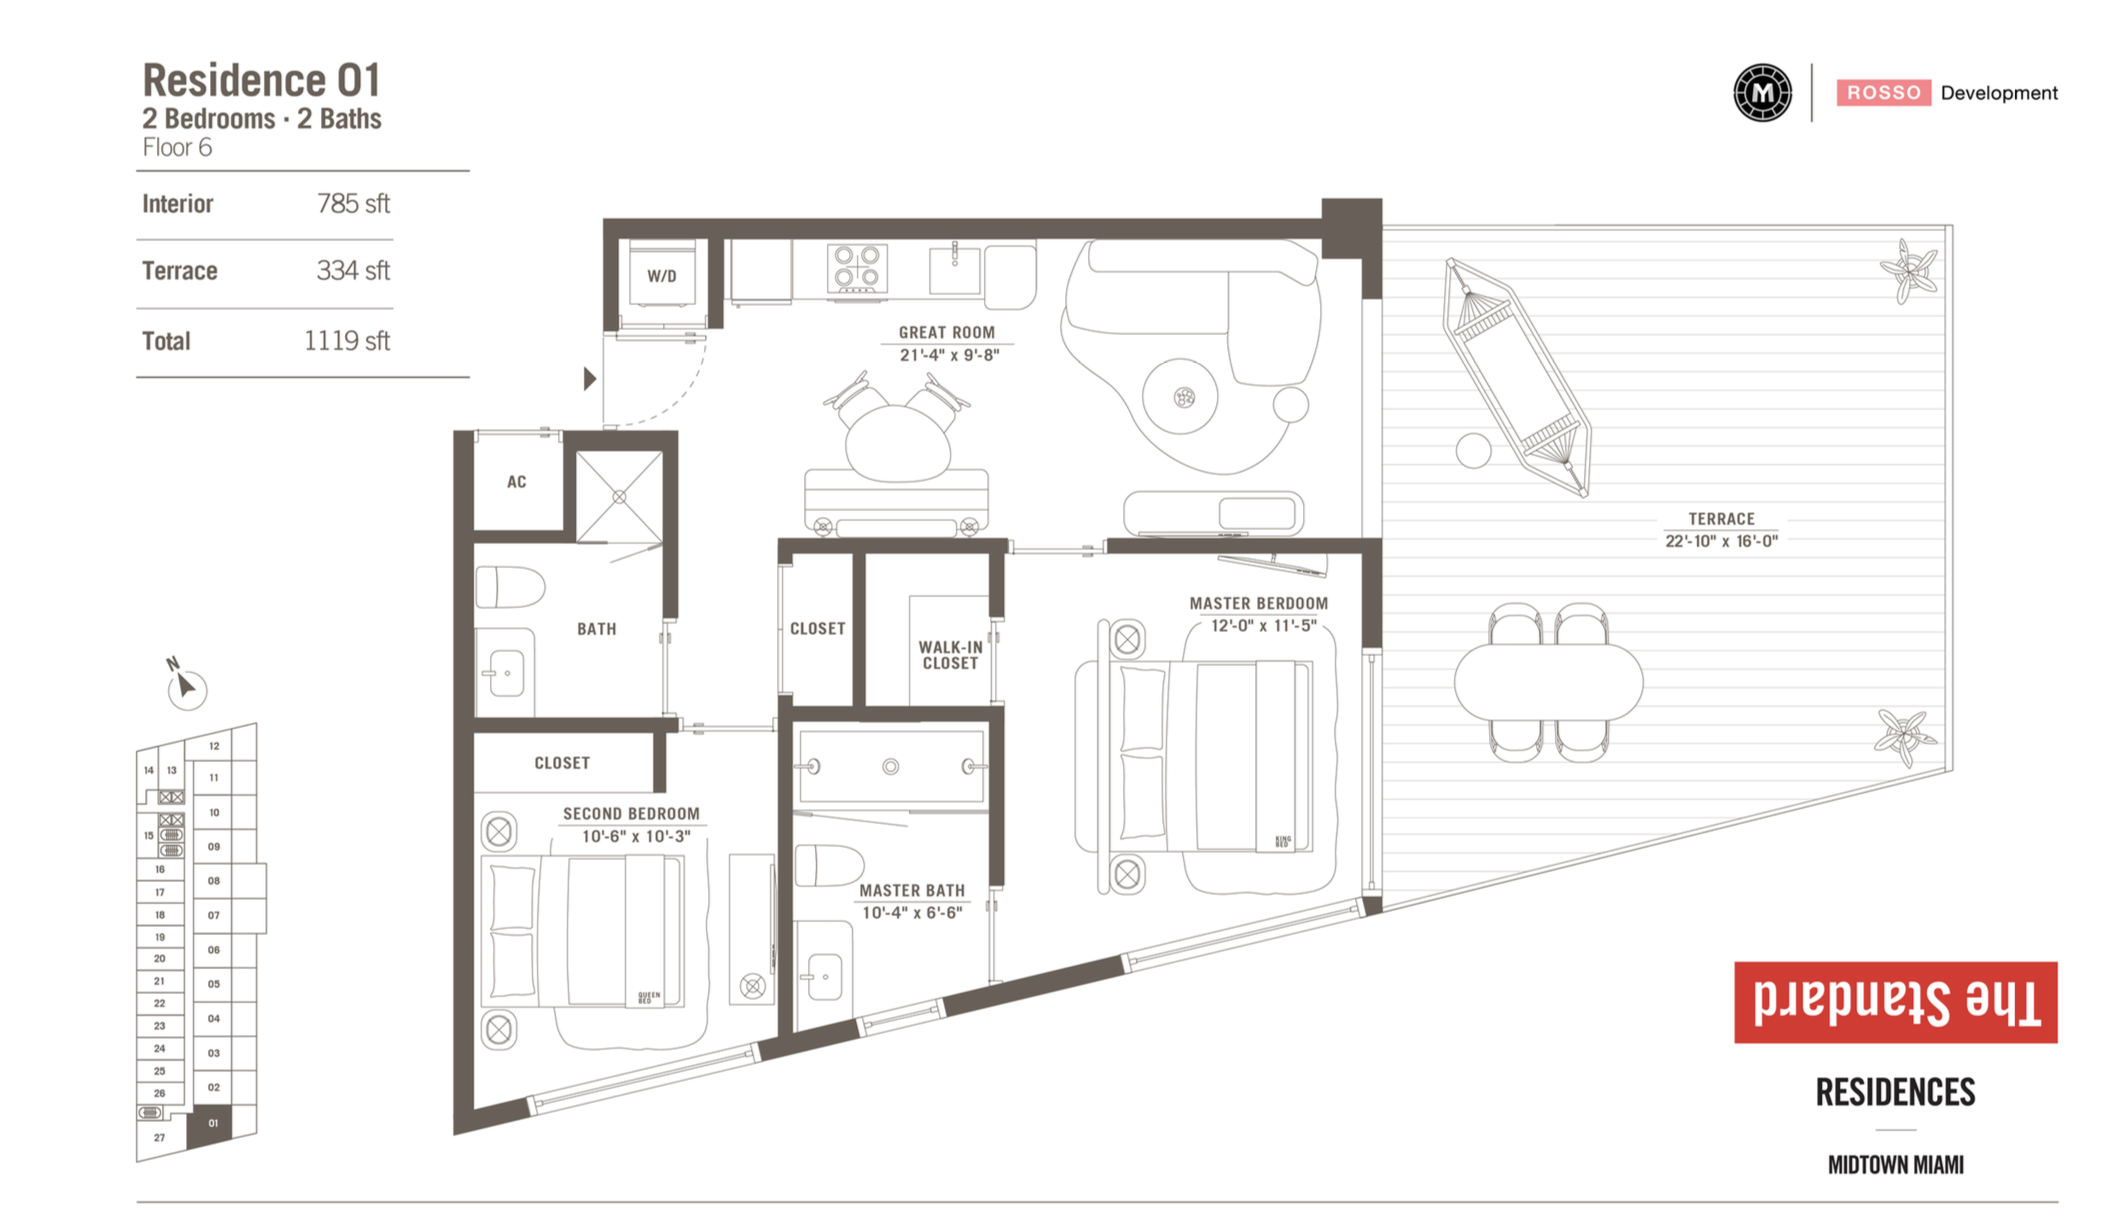 The Standard Residences | Residence 01 |  2 Be/2 Ba | 785 SF | Floor 6